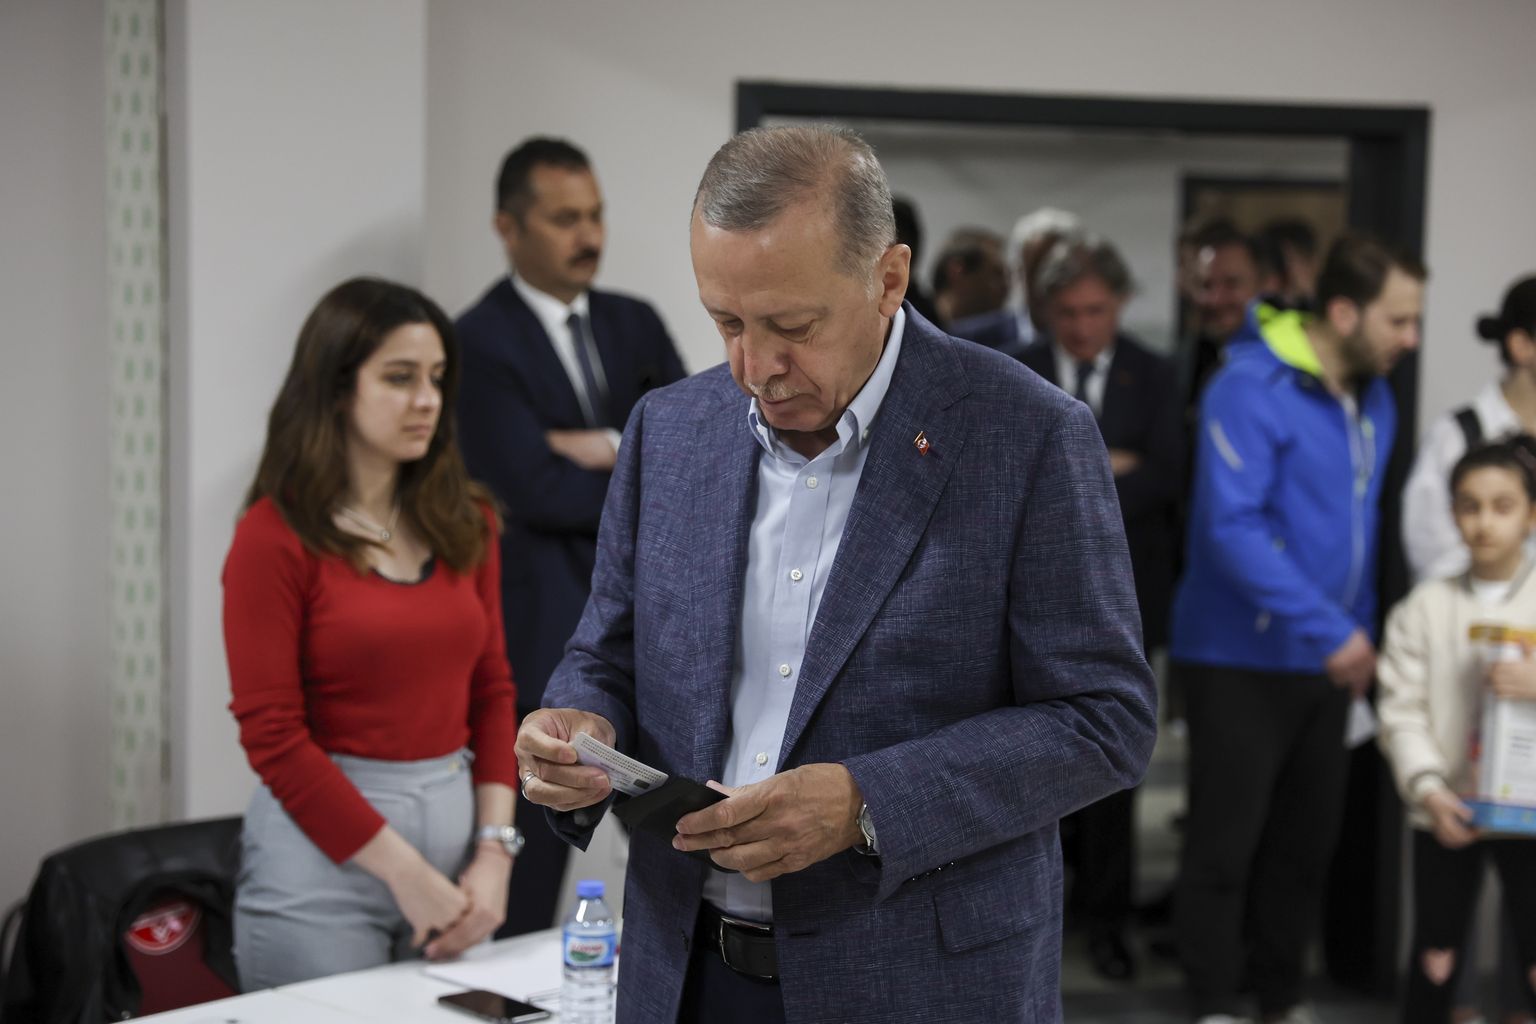 Действующий глава государства Реджеп Тайип Эрдоган проголосовал на выборах президента в Стамбуле